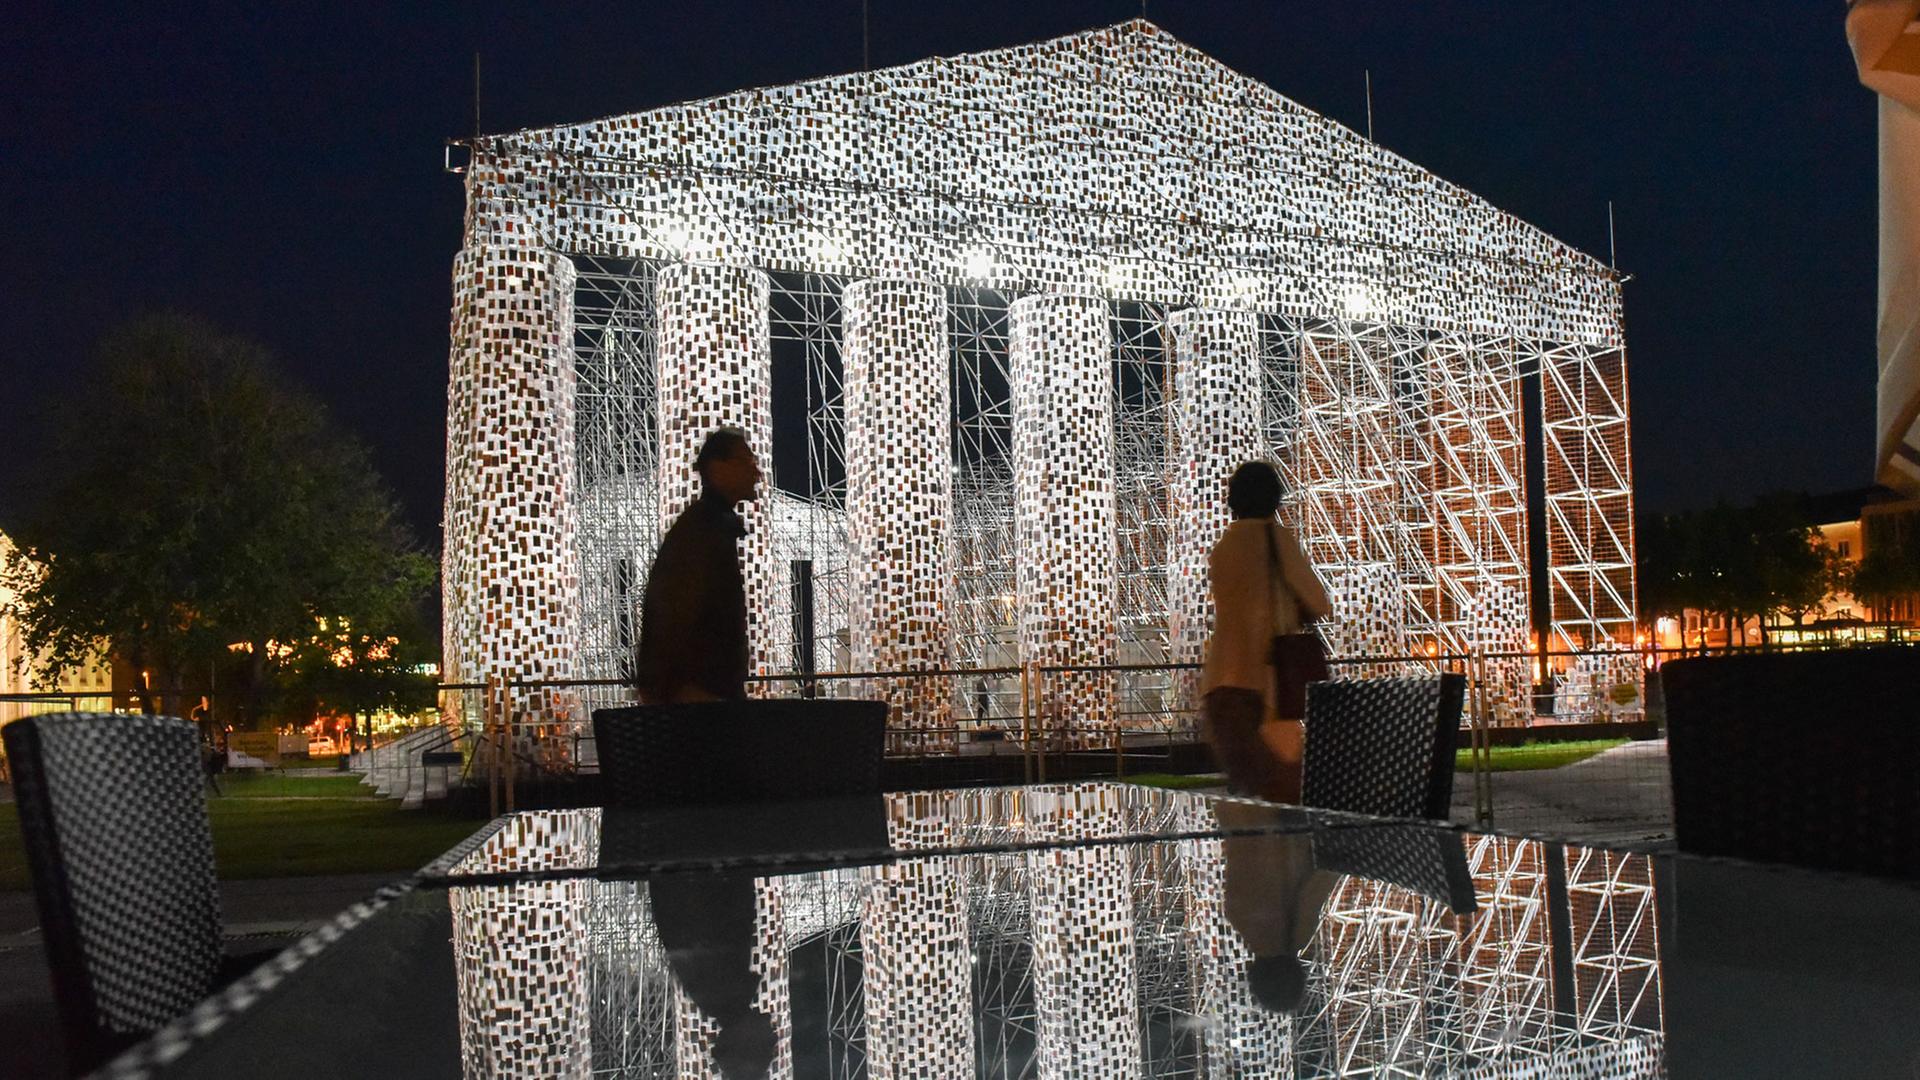 Das documenta-Kunstwerk "The Parthenon of Books" der argentinischen Künstlerin Marta Minujin wird einem Beleuchtungstest unterzogen